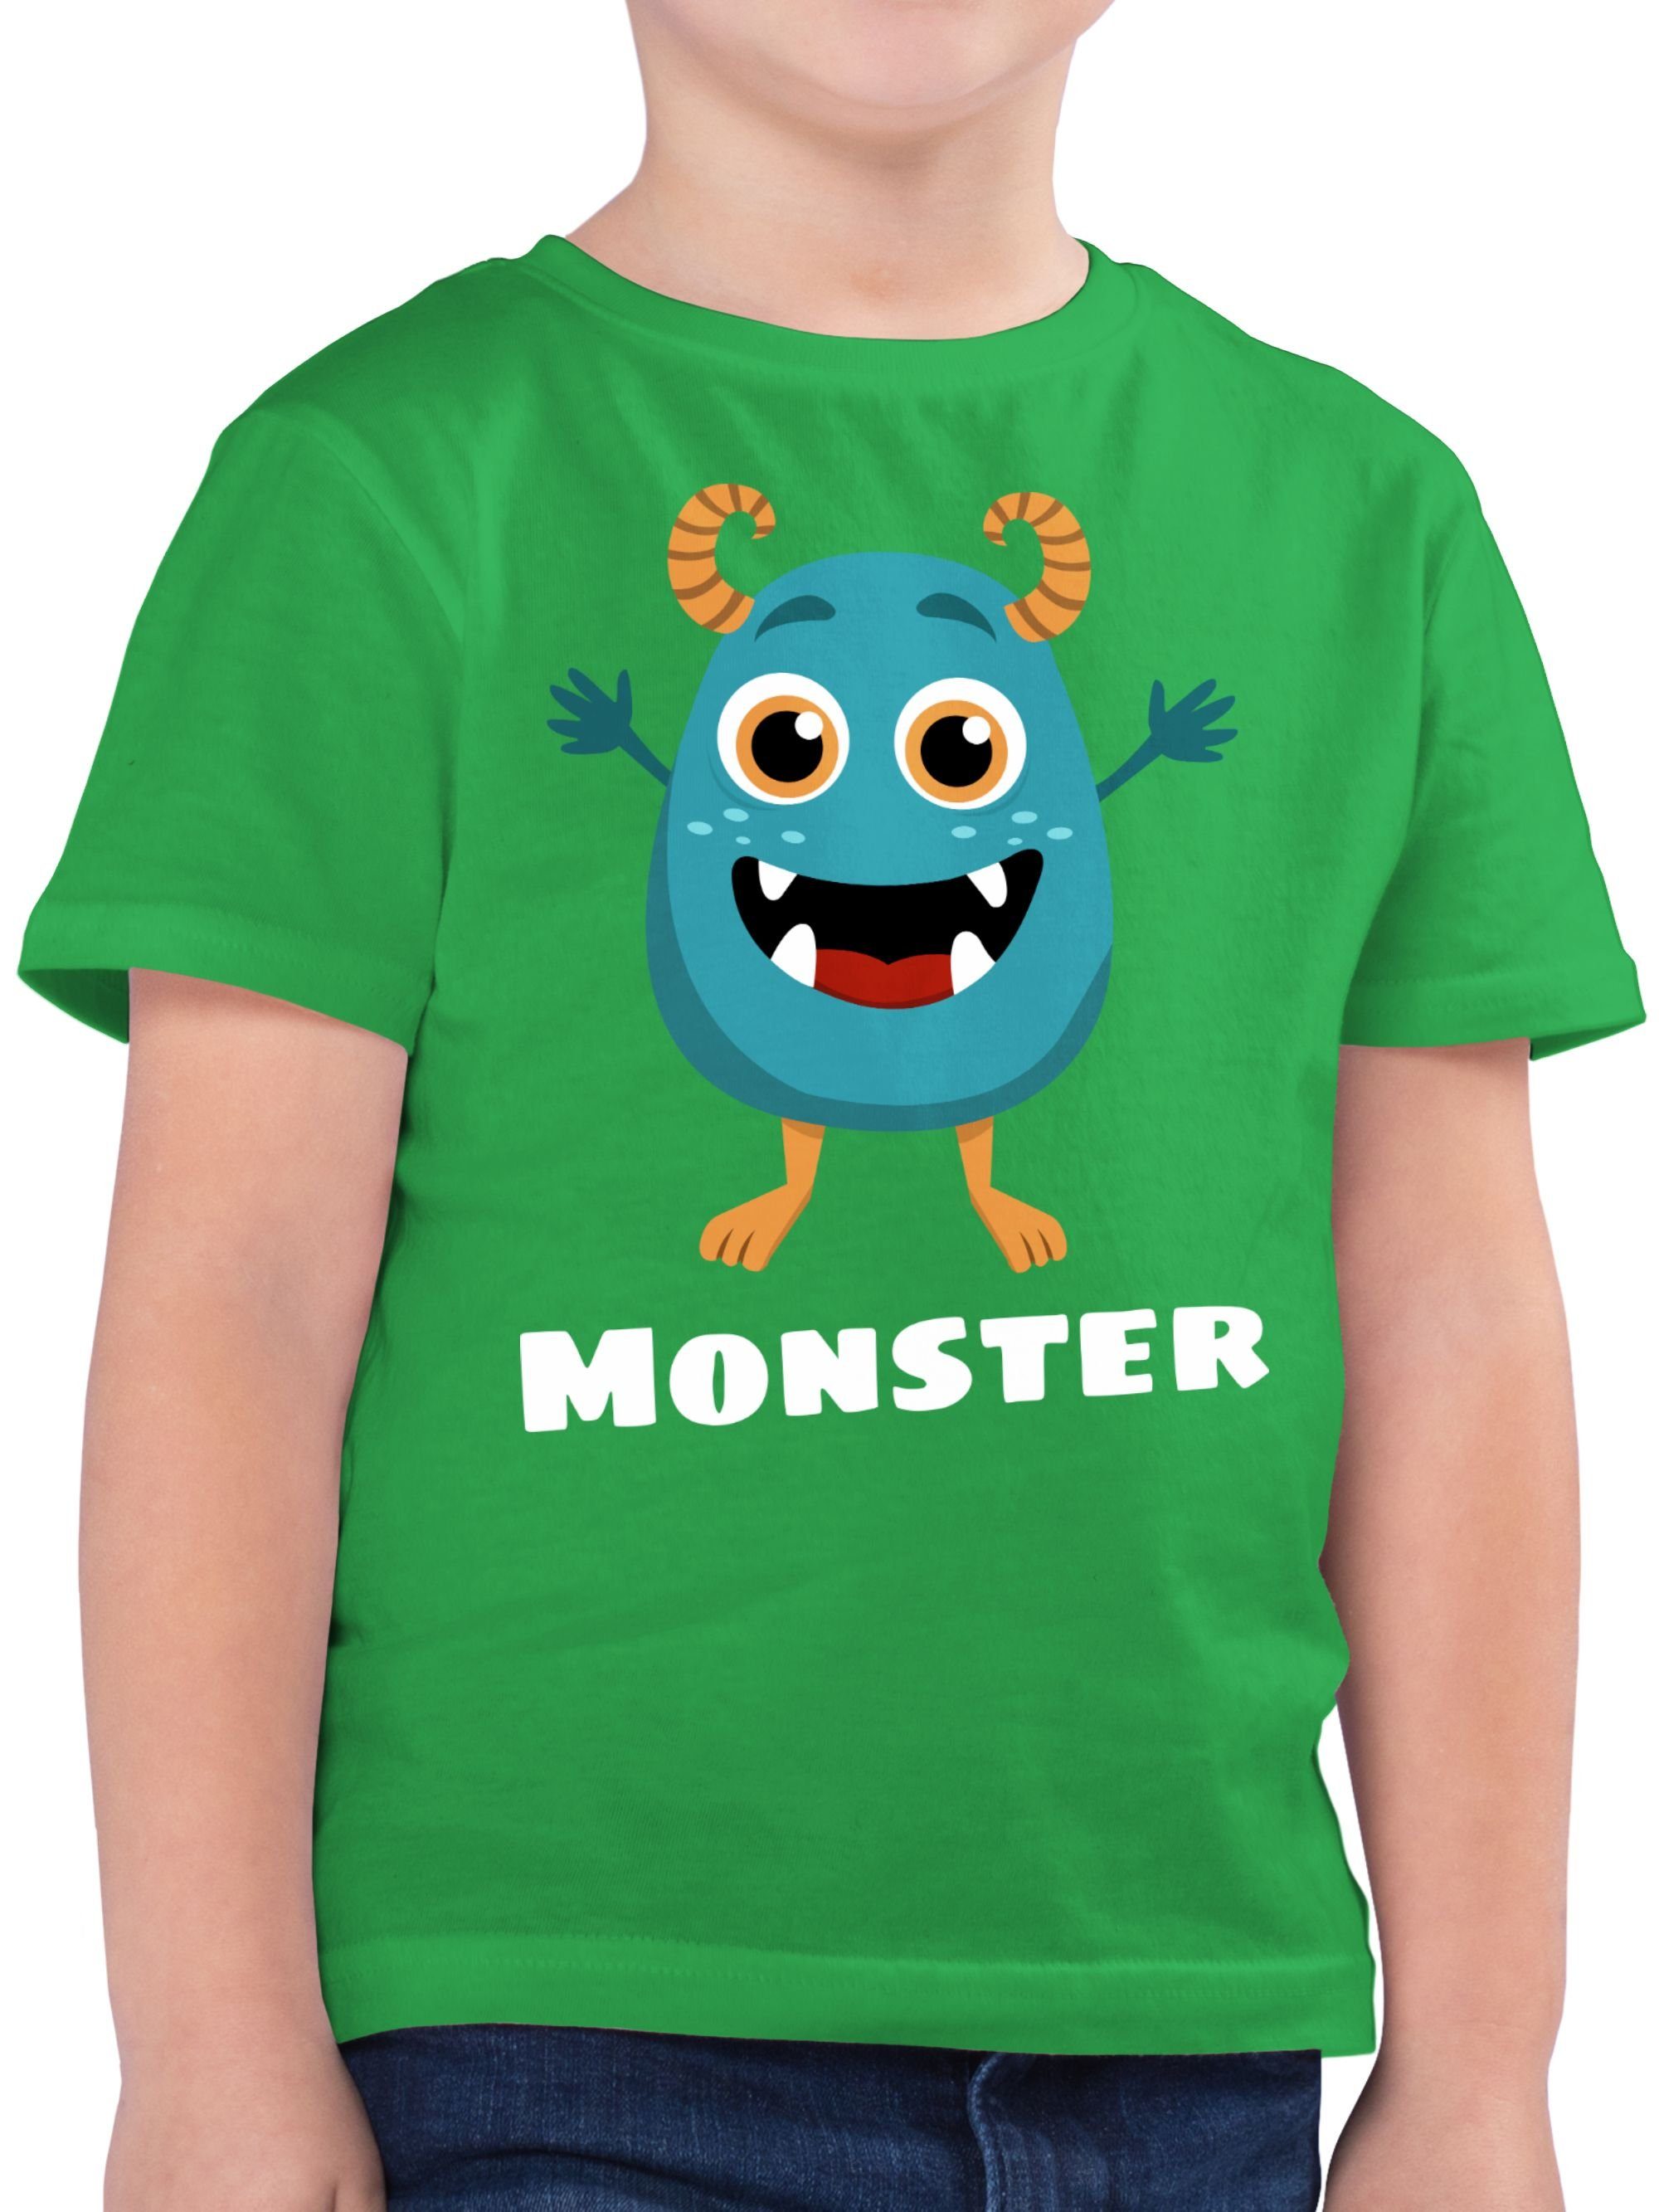 Monster Grün Partner-Look Partner-Look 2 Kind T-Shirt Kind Familie Shirtracer